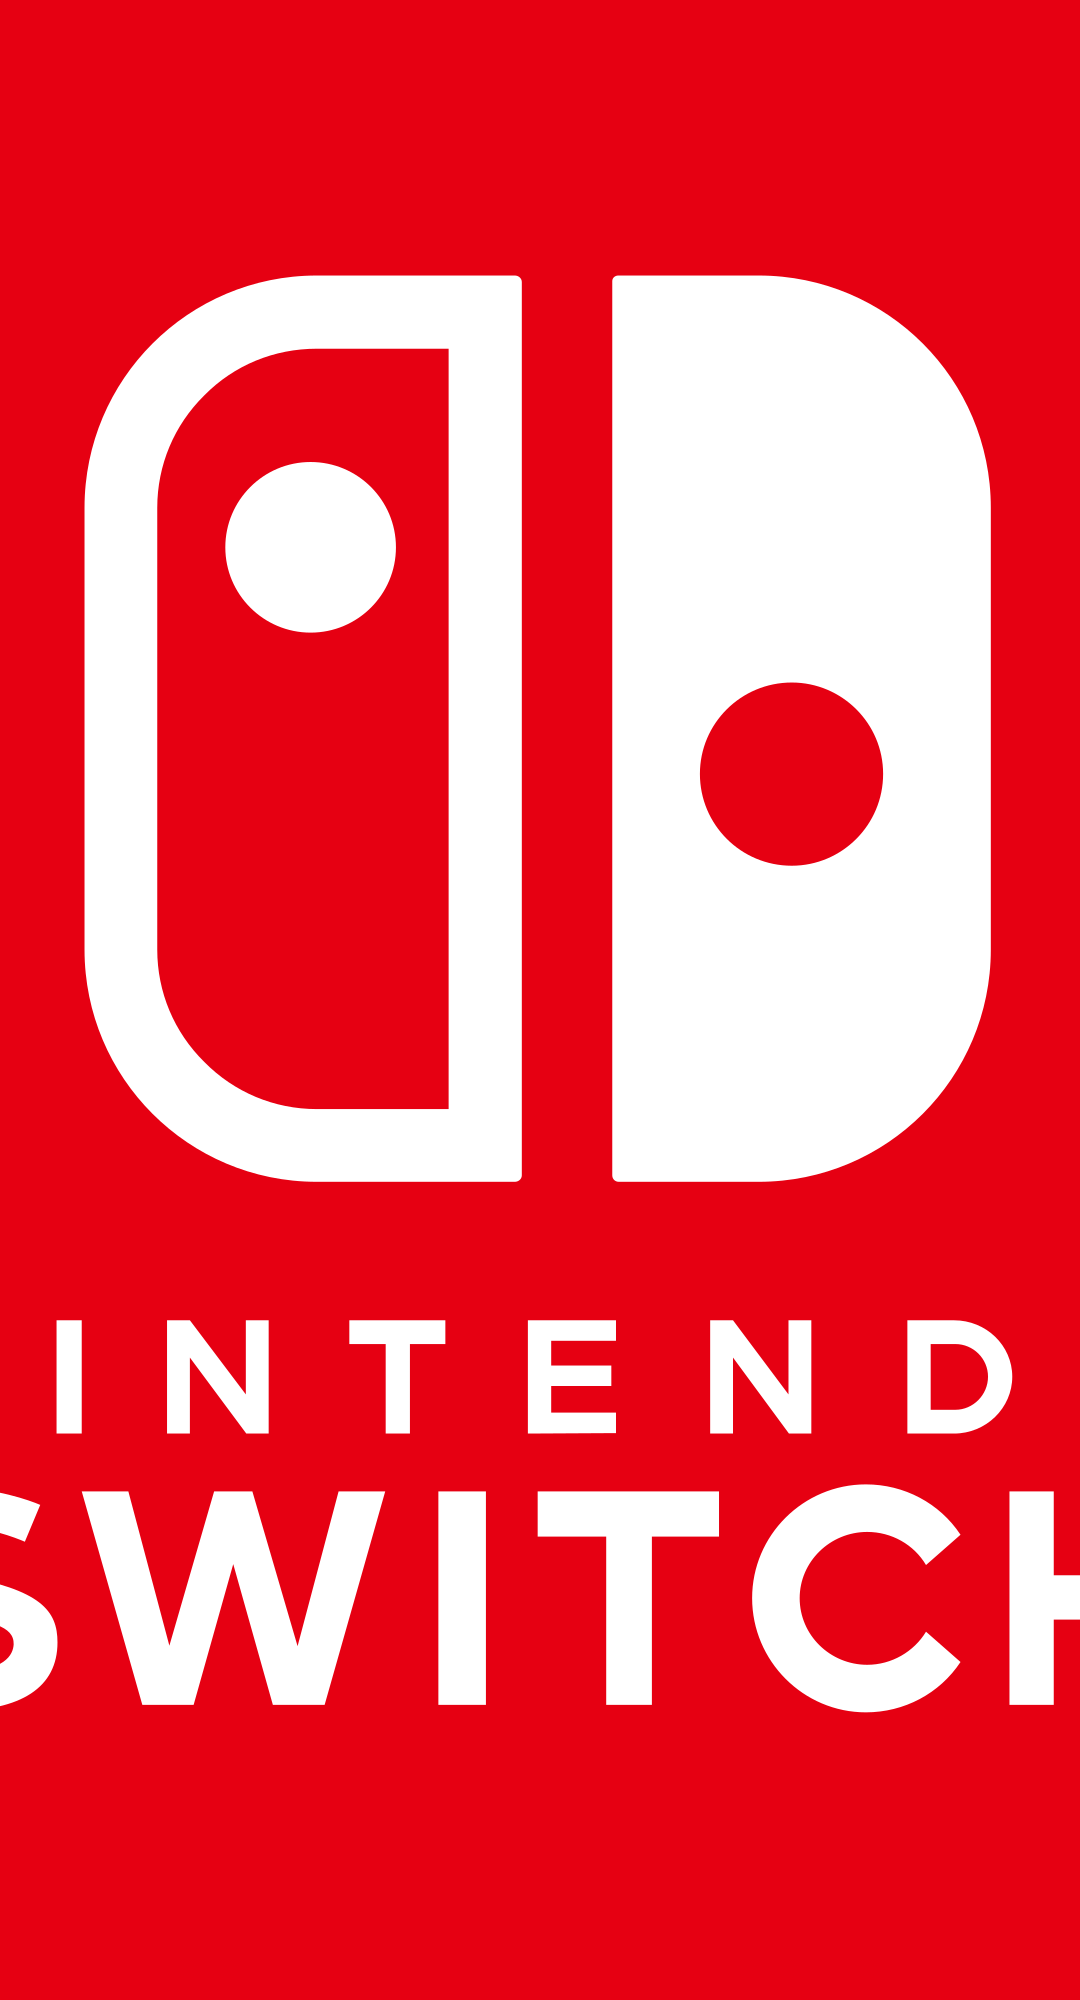 Nintendo Switch: la presentazione tra meno di 24 ore